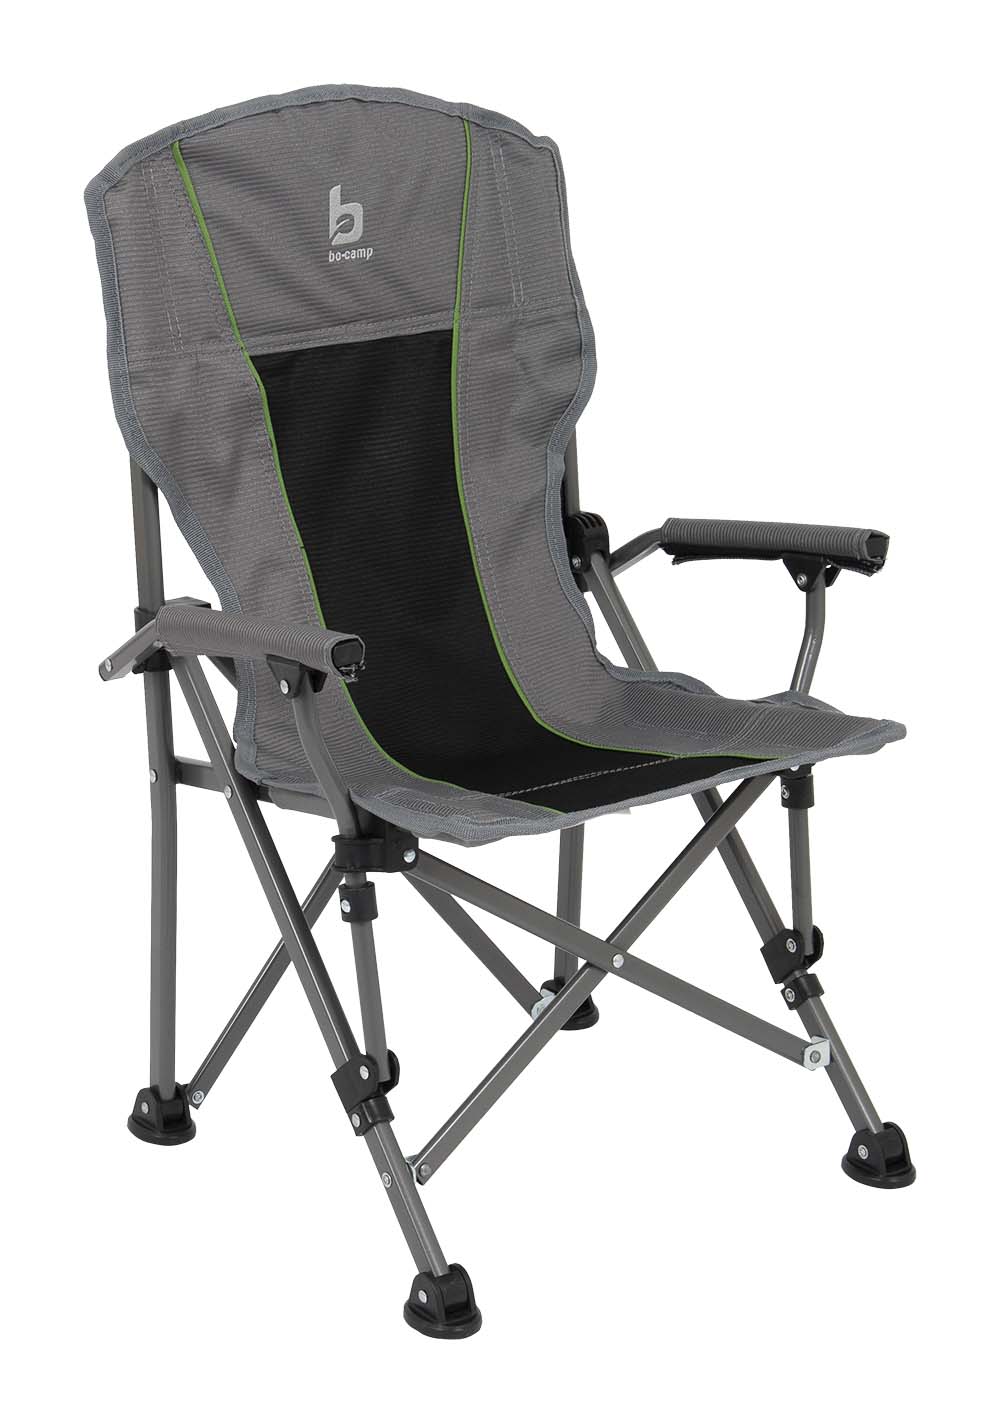 1267170 Una silla infantil extremadamente lujosa y cómoda. Esta silla infantil tiene cómodos reposabrazos cubiertos de tela. Esta silla tiene un armazón de acero con bloqueo y un lujoso asiento de nailon de 600 deniers en 2 tonos. Compacta y portátil en la bolsa de transporte incluida (LxAxA: 62x15x16 cm). Altura del asiento: 29 centímetros. Profundidad del asiento: 29 centímetros. Anchura del asiento: 33 centímetros. Longitud del respaldo: 42 centímetros. Capacidad máxima de carga: 50 kilogramos.